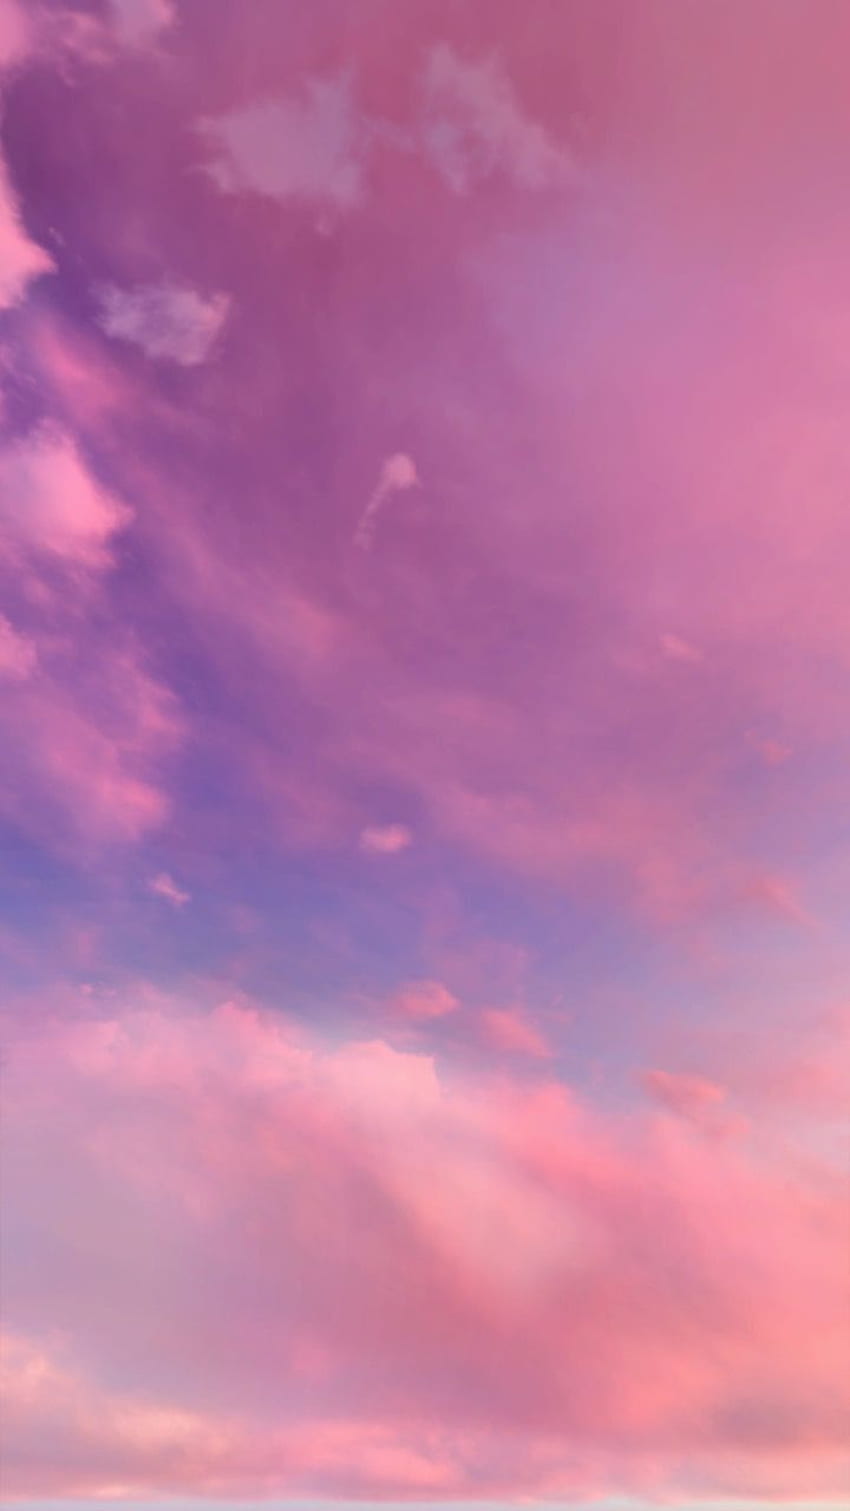 Hannah en buenas notas ipad. Nubes rosadas, cielo de iPhone, pastel, estética rosa y púrpura fondo de pantalla del teléfono